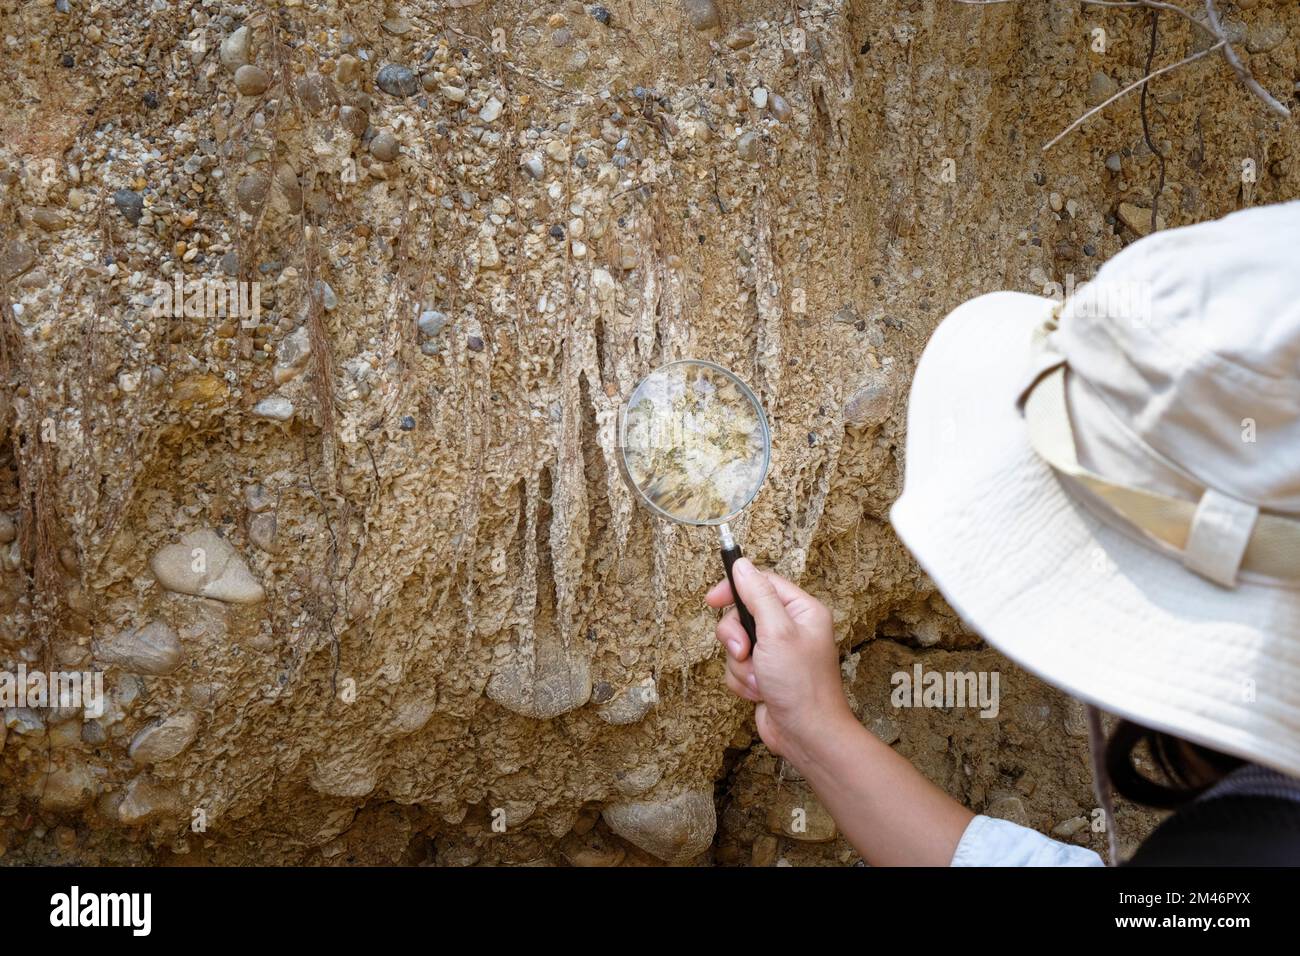 Une géologue féminine utilisant une loupe examine la nature, analysant des roches ou des cailloux. Les chercheurs recueillent des échantillons de matériel biologique. Environnement Banque D'Images